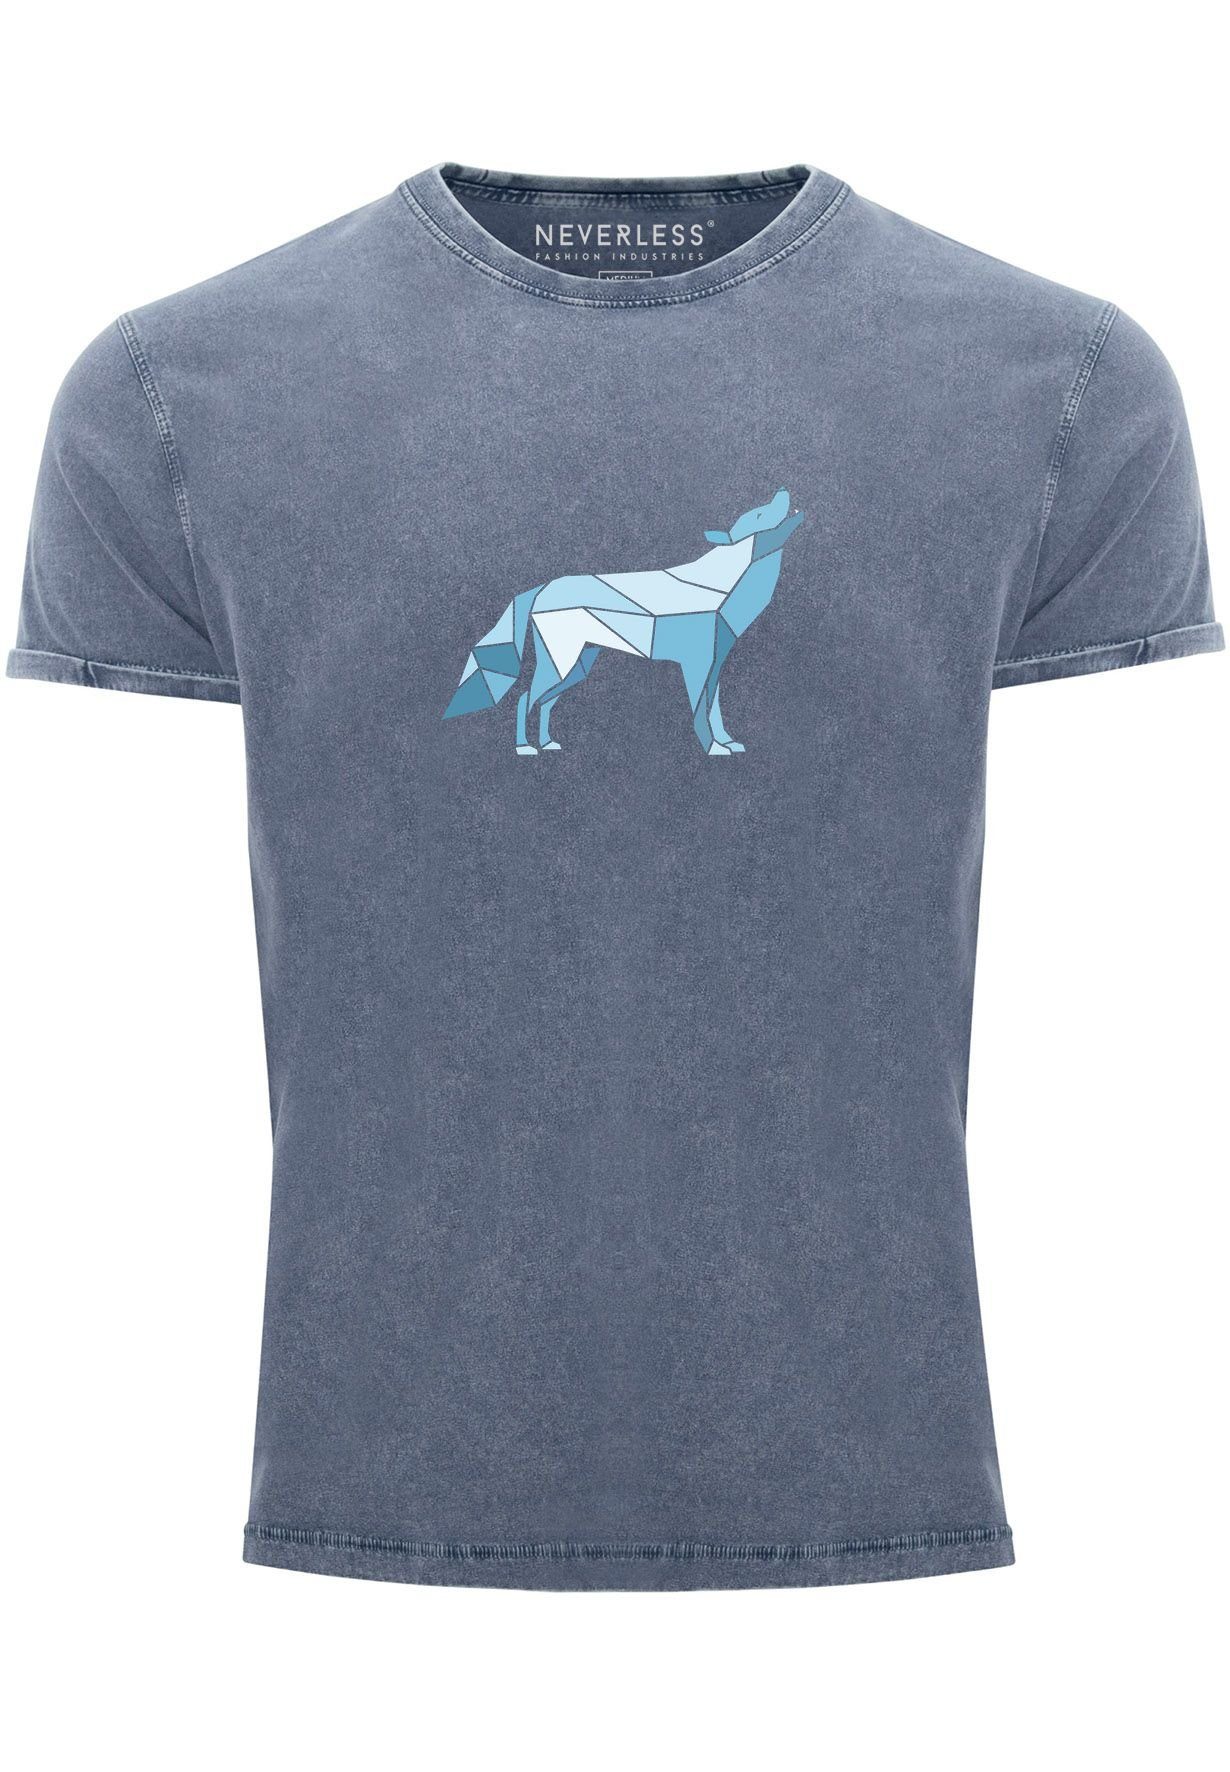 Neverless Print-Shirt Herren Vintage Shirt Aufdruck Wolf Polygon Print Geometrie Outdoor Wil mit Print blau